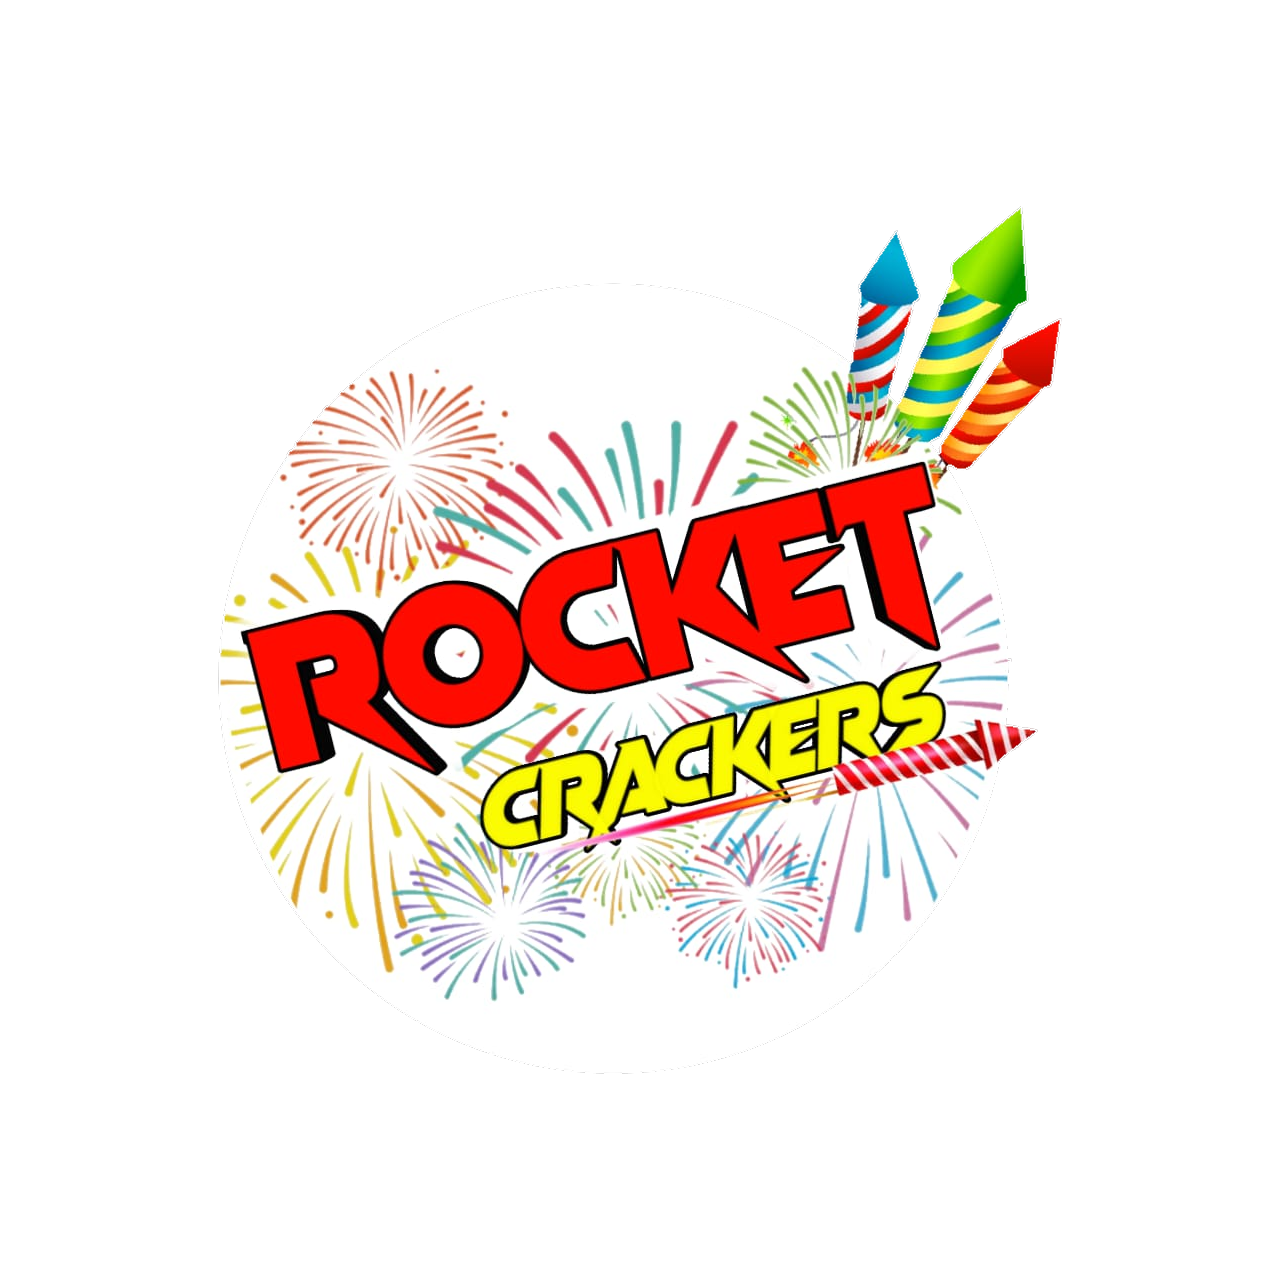 Rocket crackers